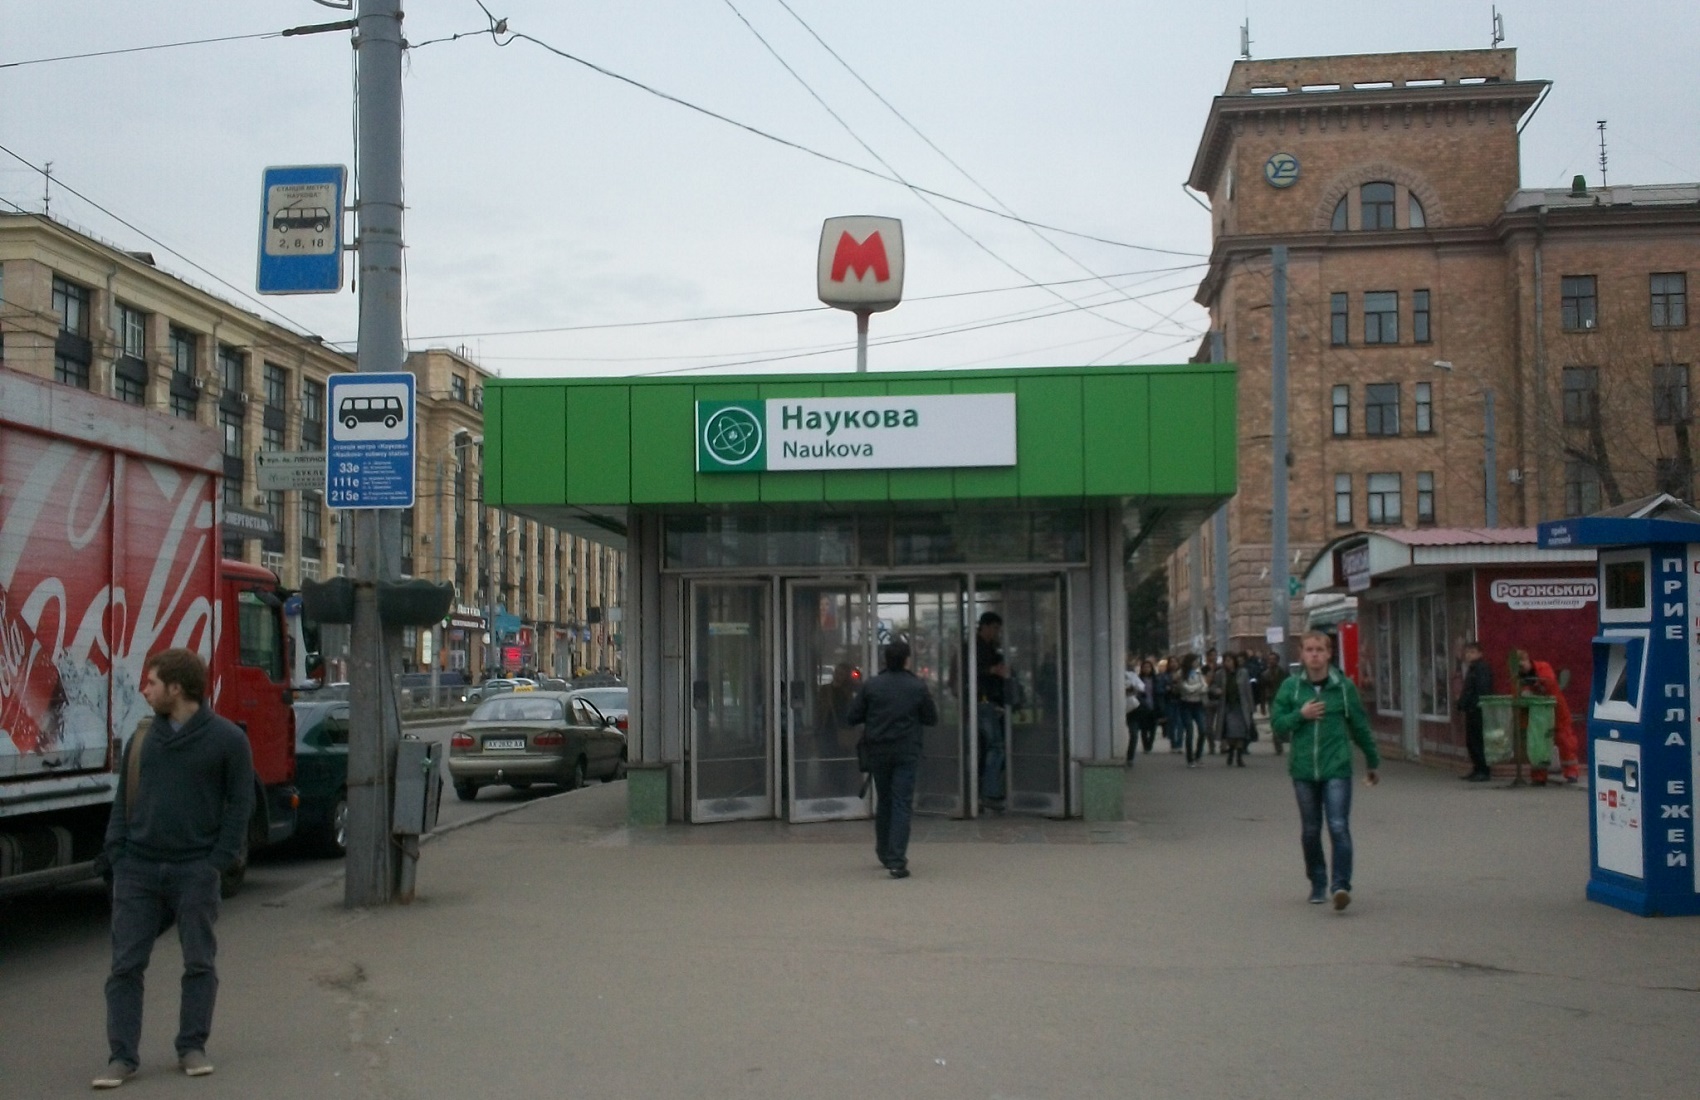 Ученые призвали власти Харькова не называть станцию метро и проспект в честь Кернеса